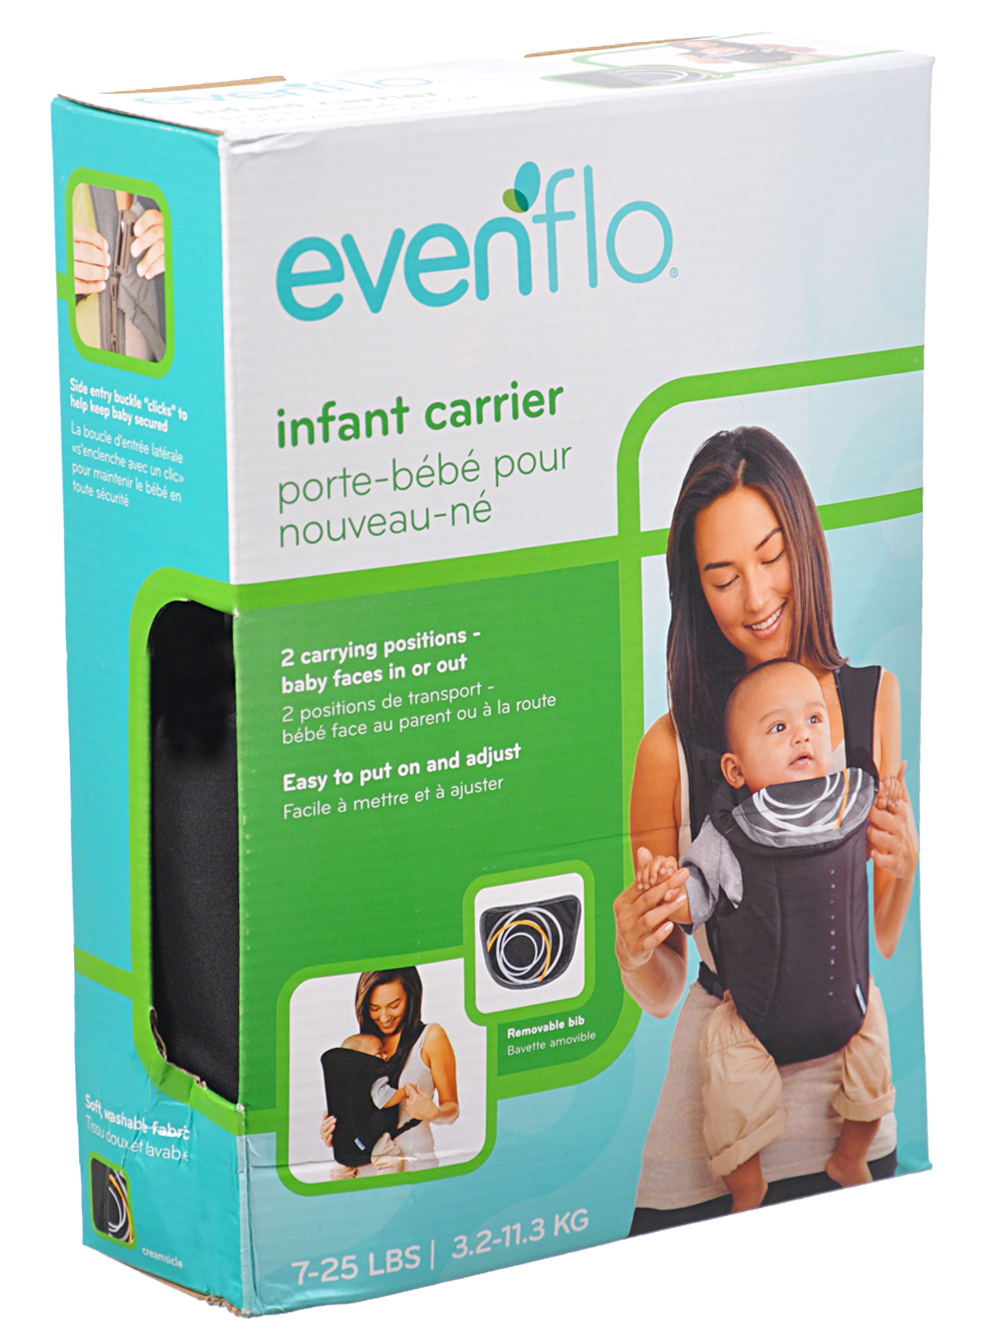 evenflo easy infant carrier